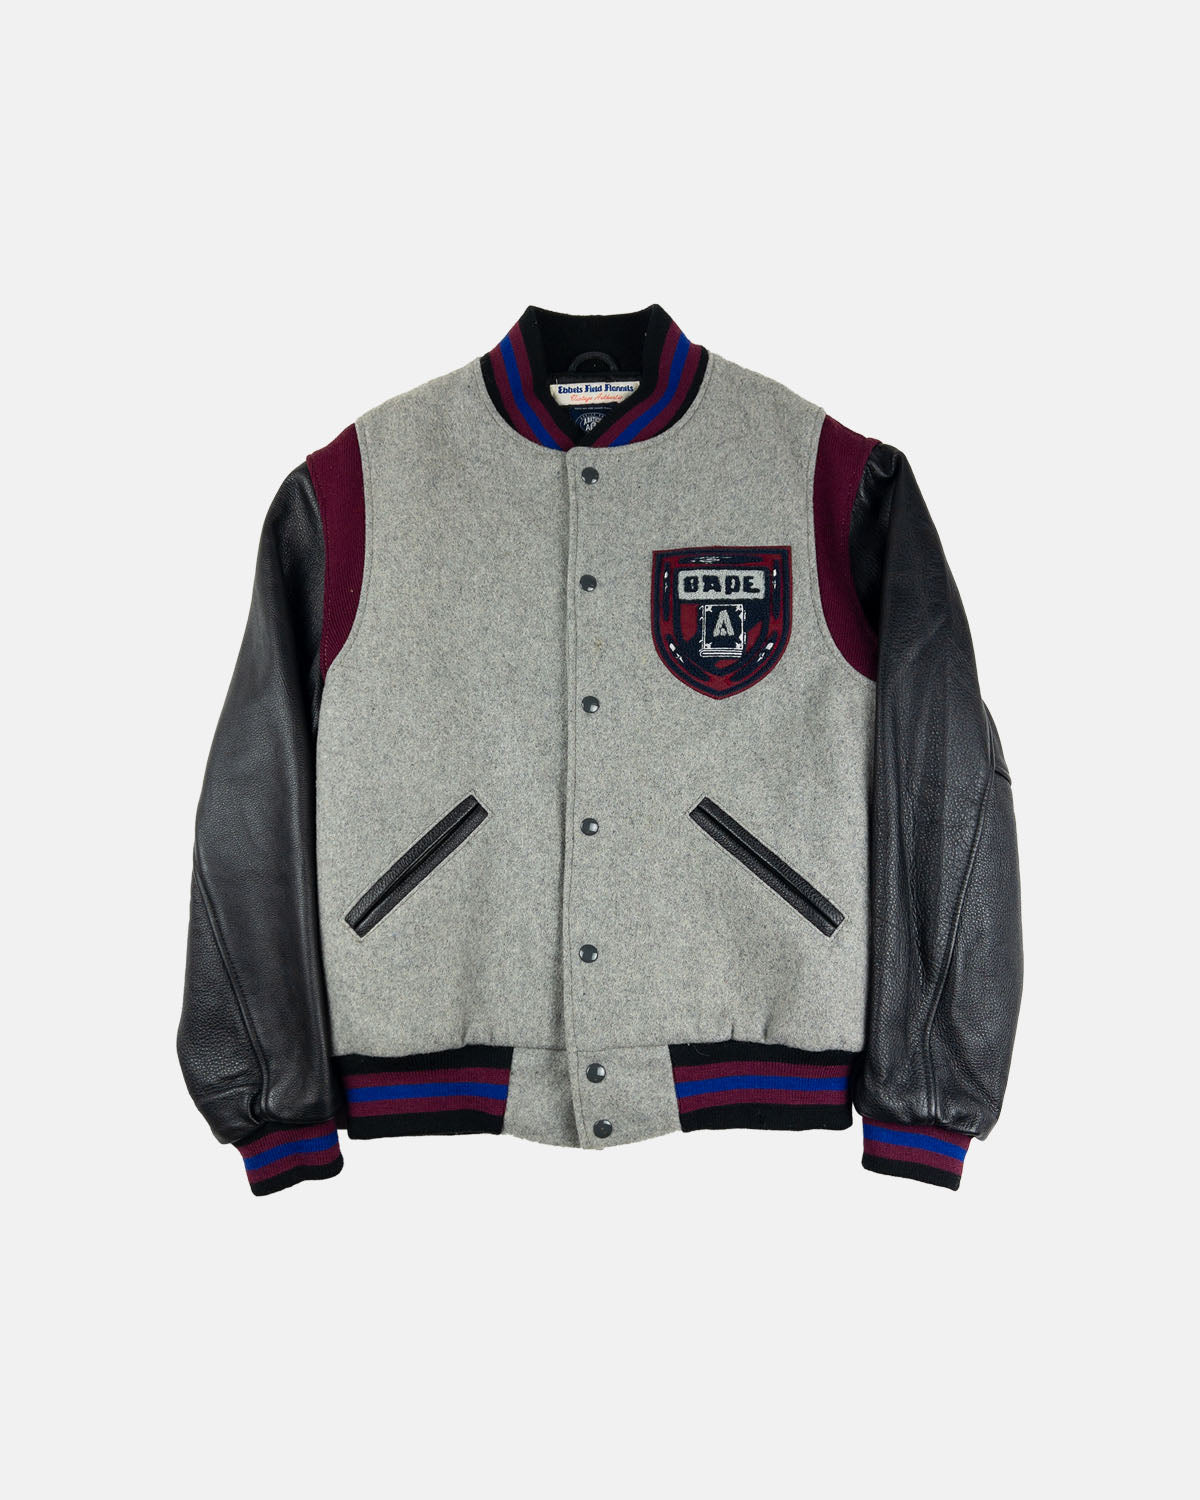 2011 Bape x Ebbets Field Flannels Black/Grey Varsity Jacket – Aigo